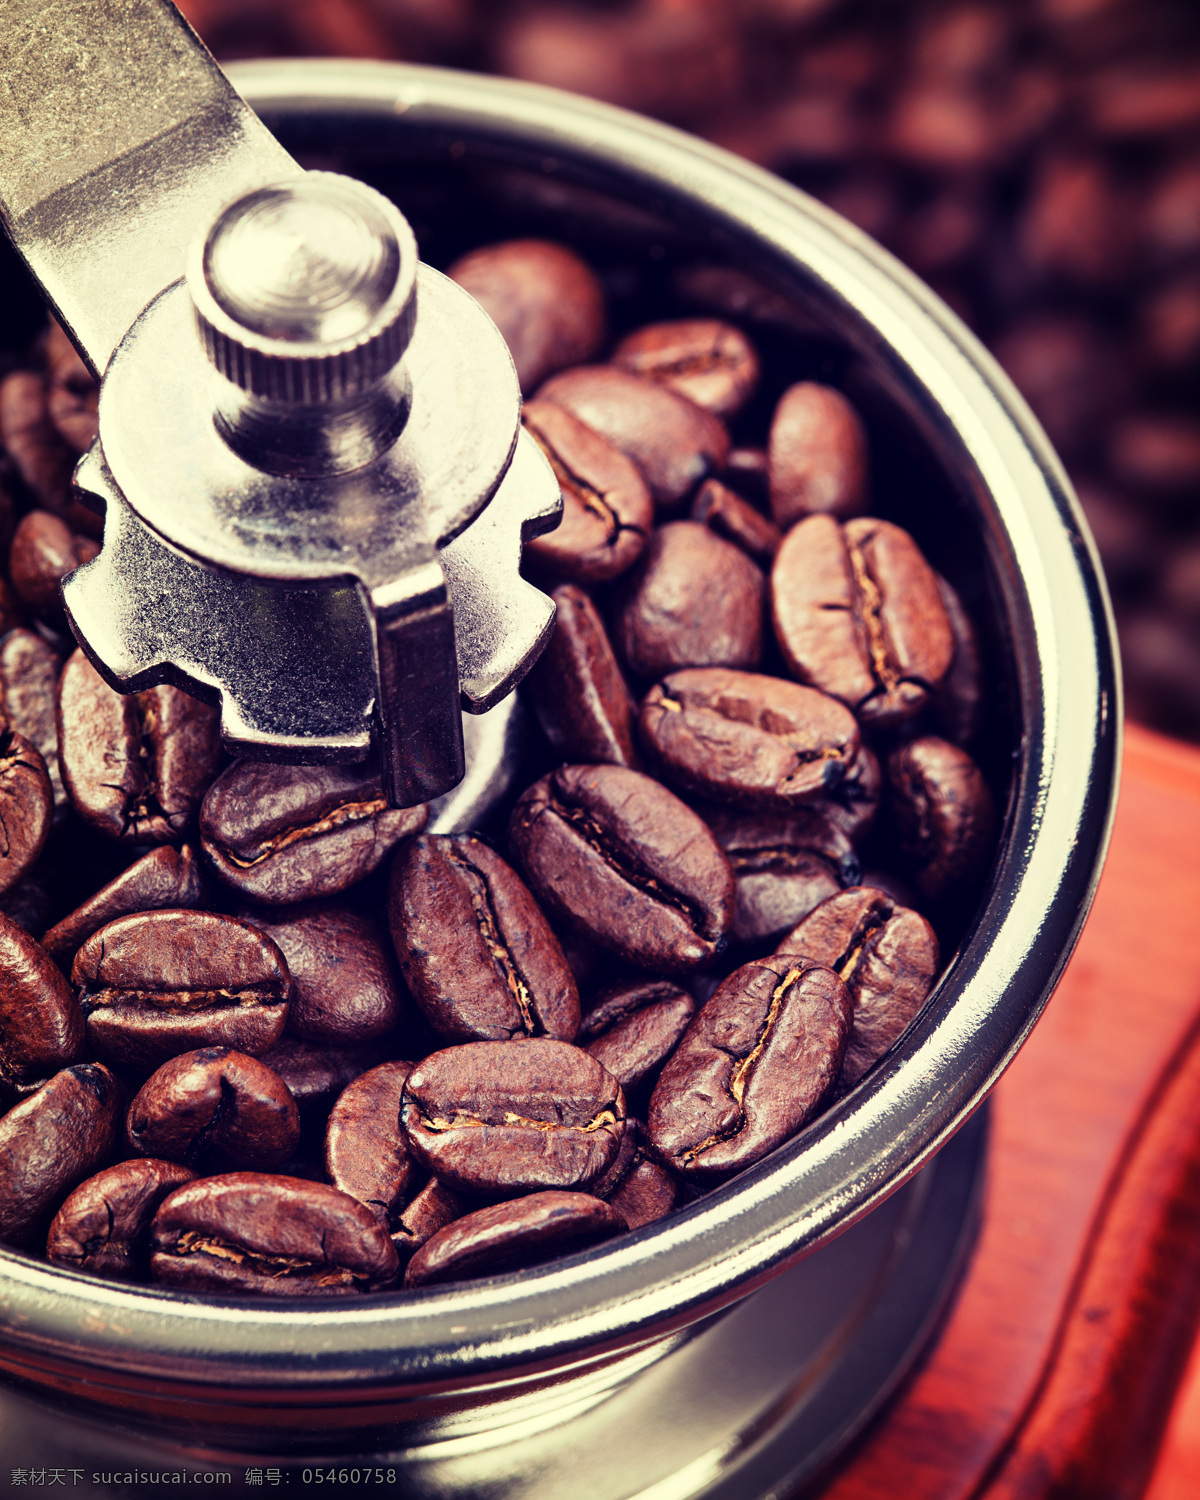 咖啡豆 咖啡广告 咖啡豆特写 咖啡 咖啡原料 美味咖啡豆 咖啡图片 咖啡材料 食物原料 餐饮美食 酒水饮料 黑色